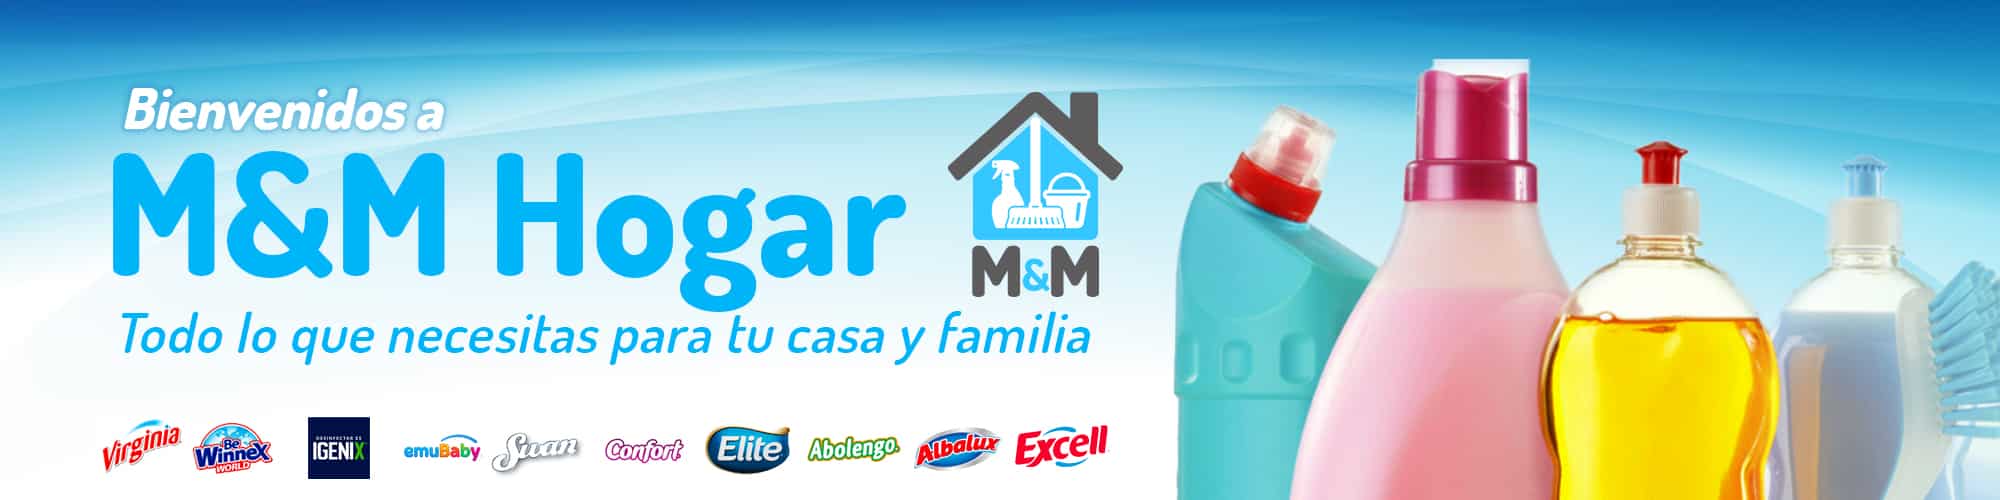 banner mym hogar logo botella detergente y bidon